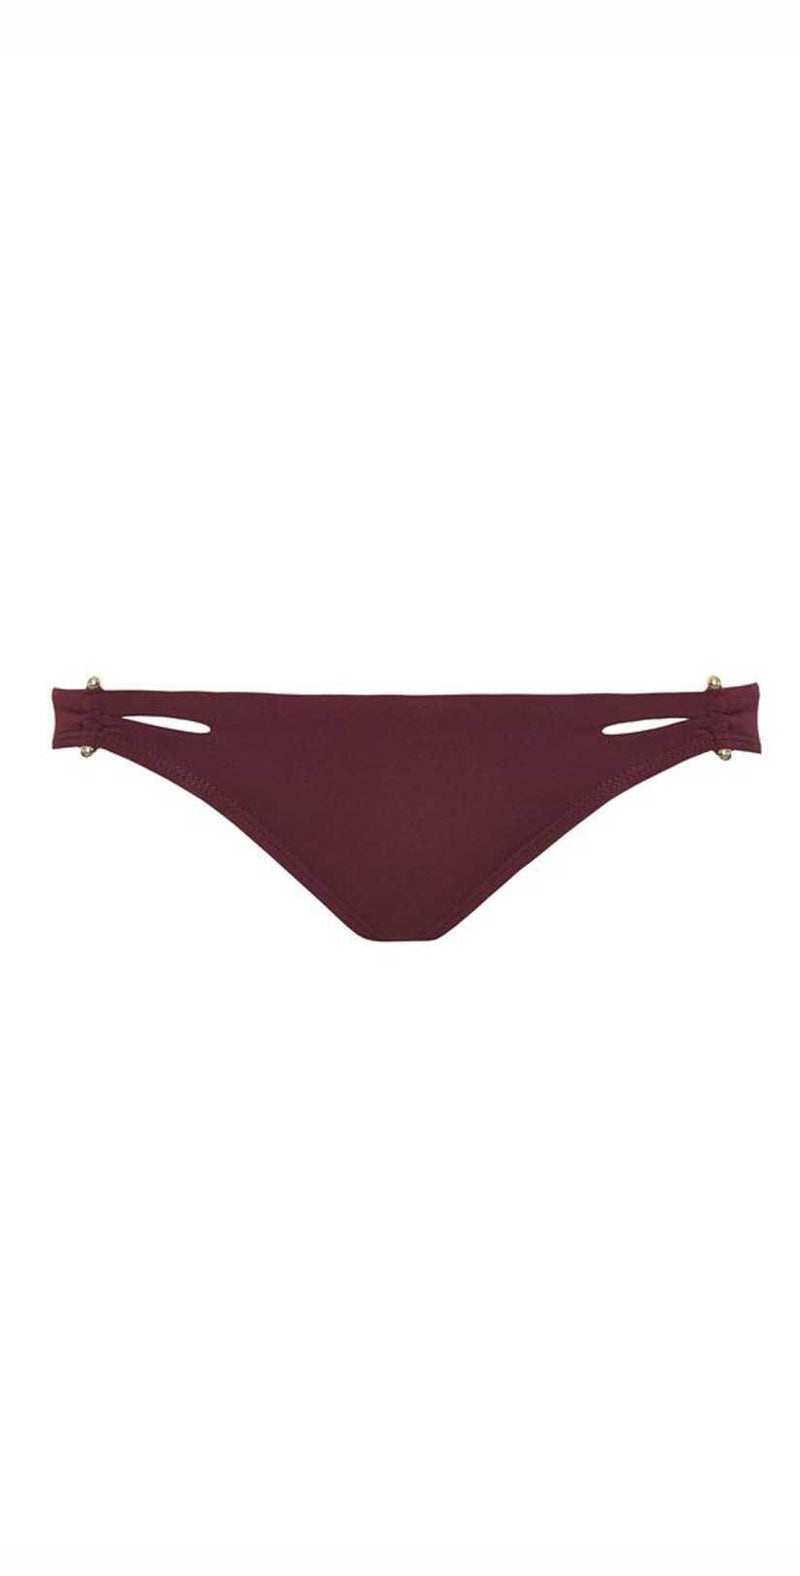 Murdoch's – Heat Swimwear - Women's Peach Prosecco Cross Back Tie Bikini Top